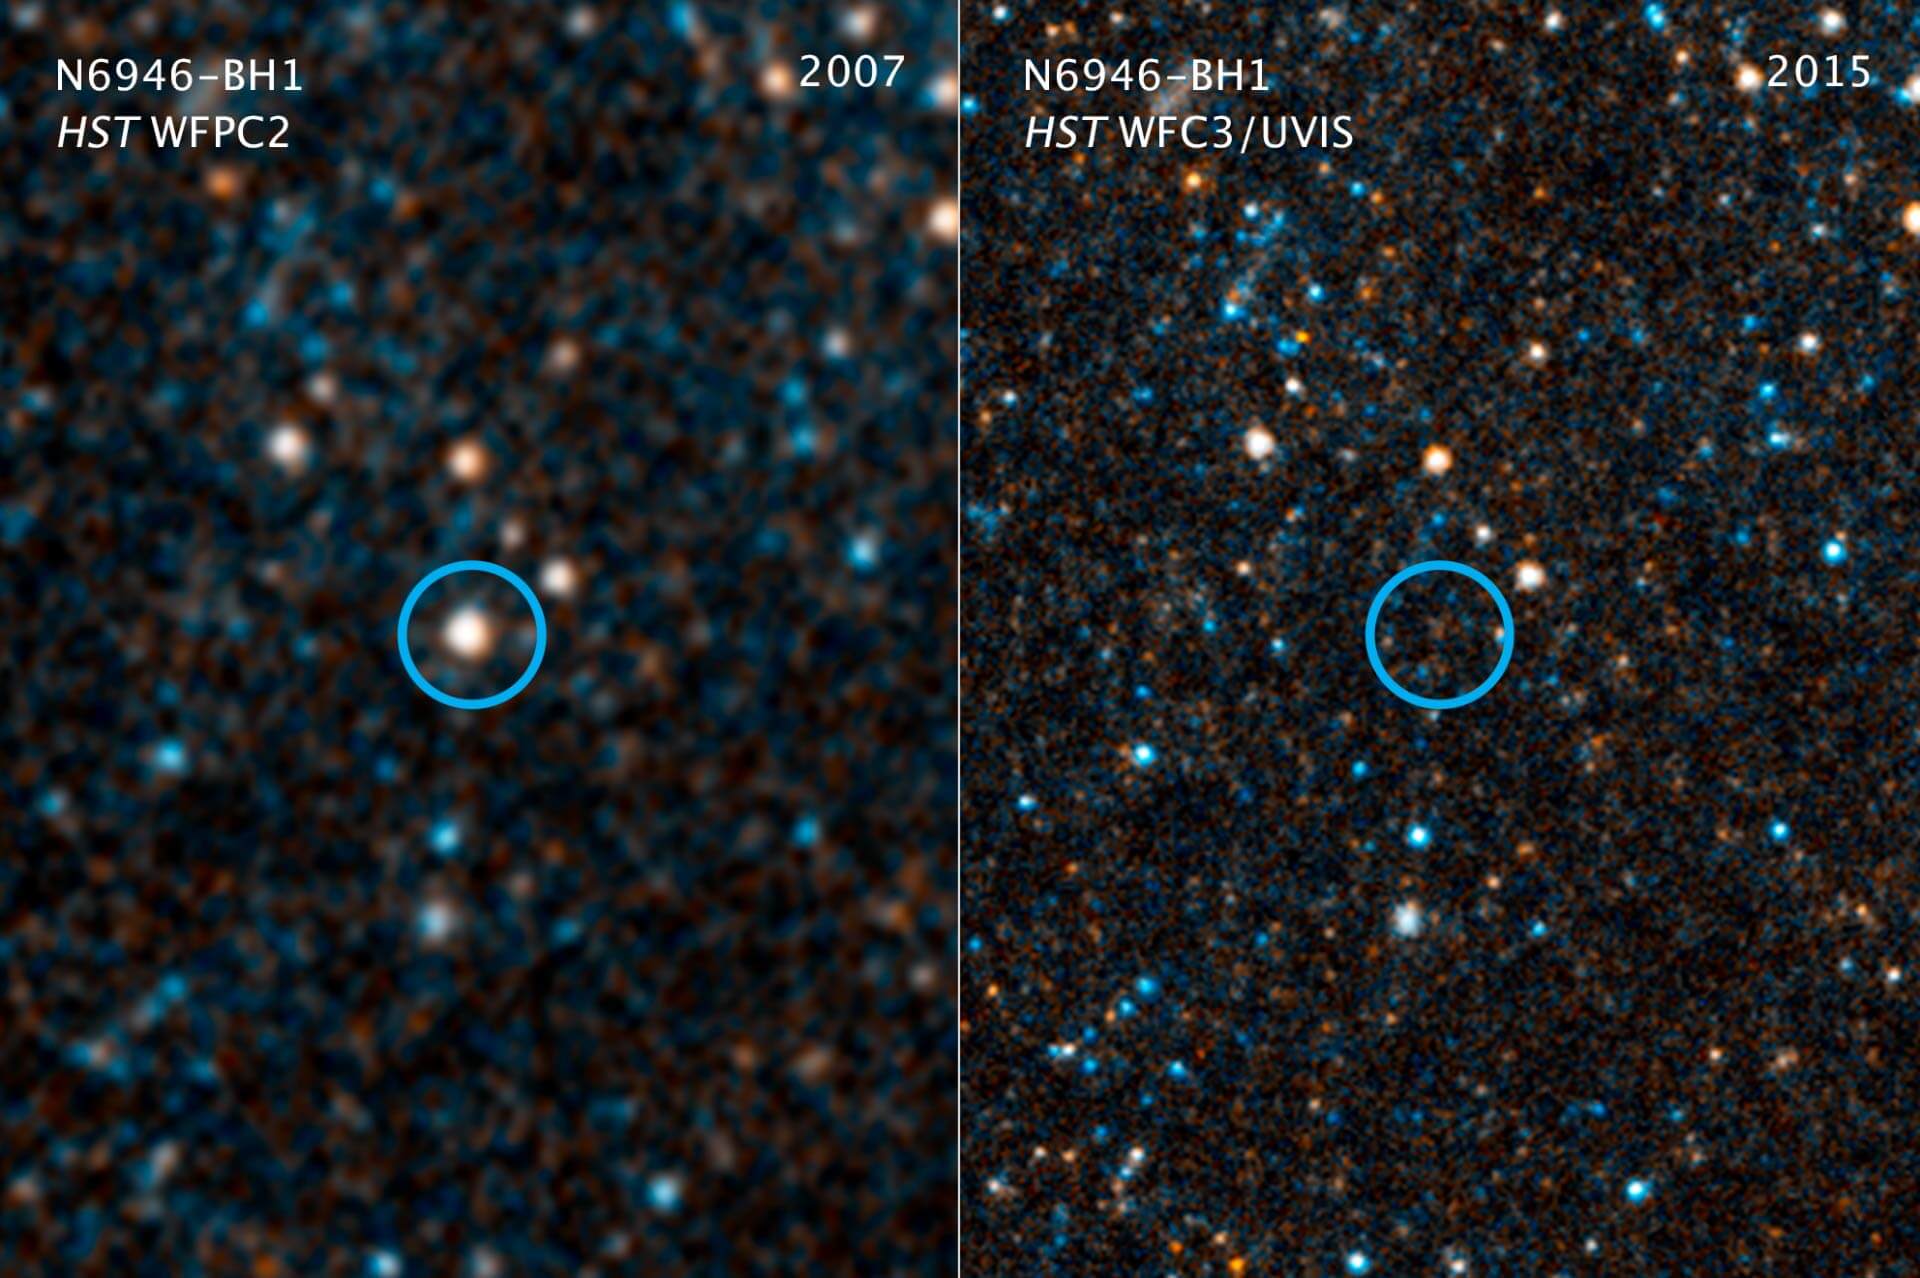 La estrella de коллапсирует en un agujero negro justo delante de la lente de Hubble